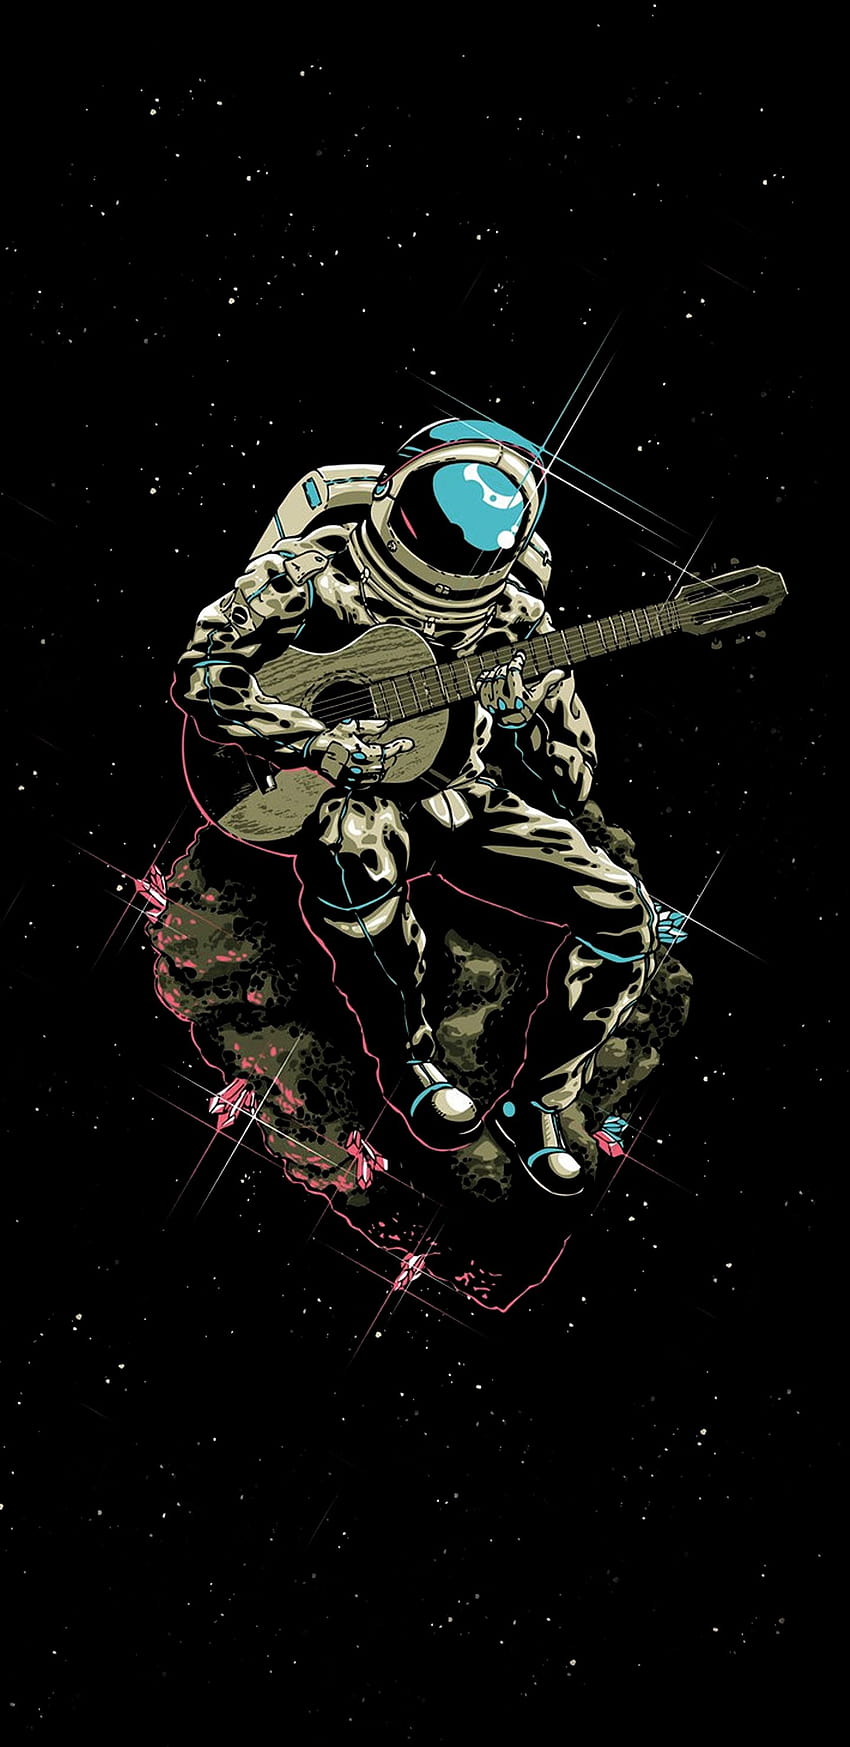 Astronot memainkan Gitar, gitar amoled wallpaper ponsel HD